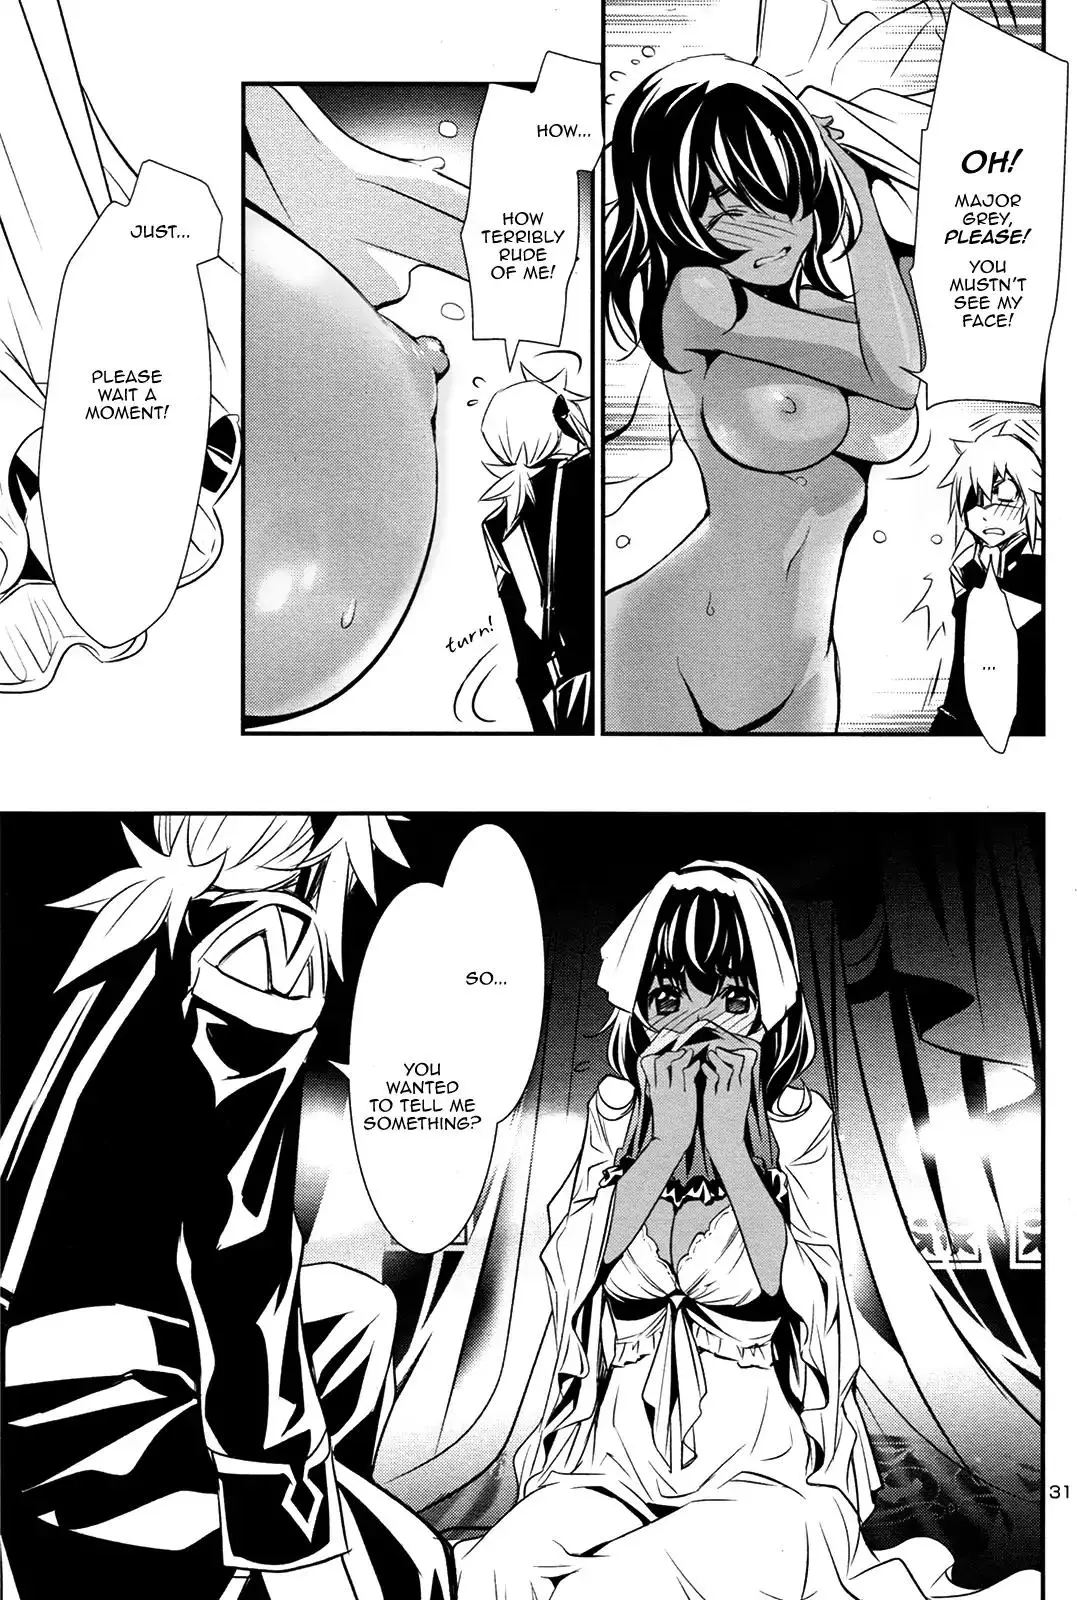 Shinju no Nectar - 10 page 29